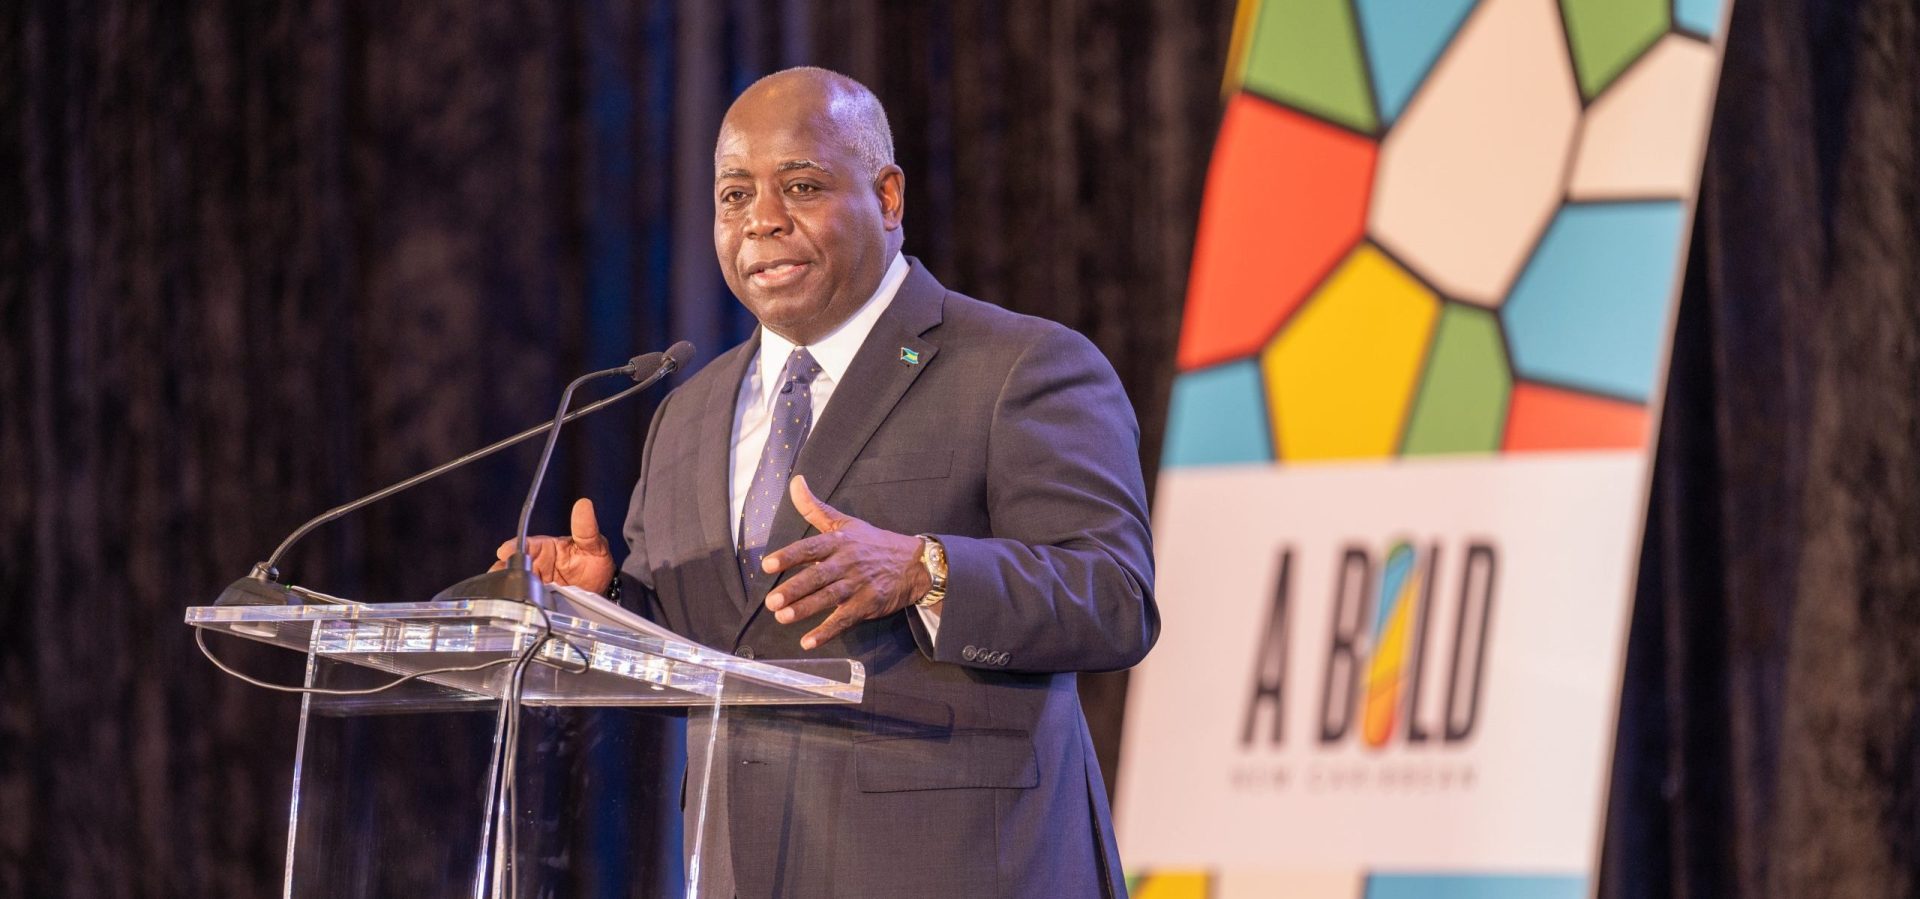 De lancering van het Caribisch Investeringsforum 2023 onthult een visionair tijdperk voor Caribische ontwikkeling